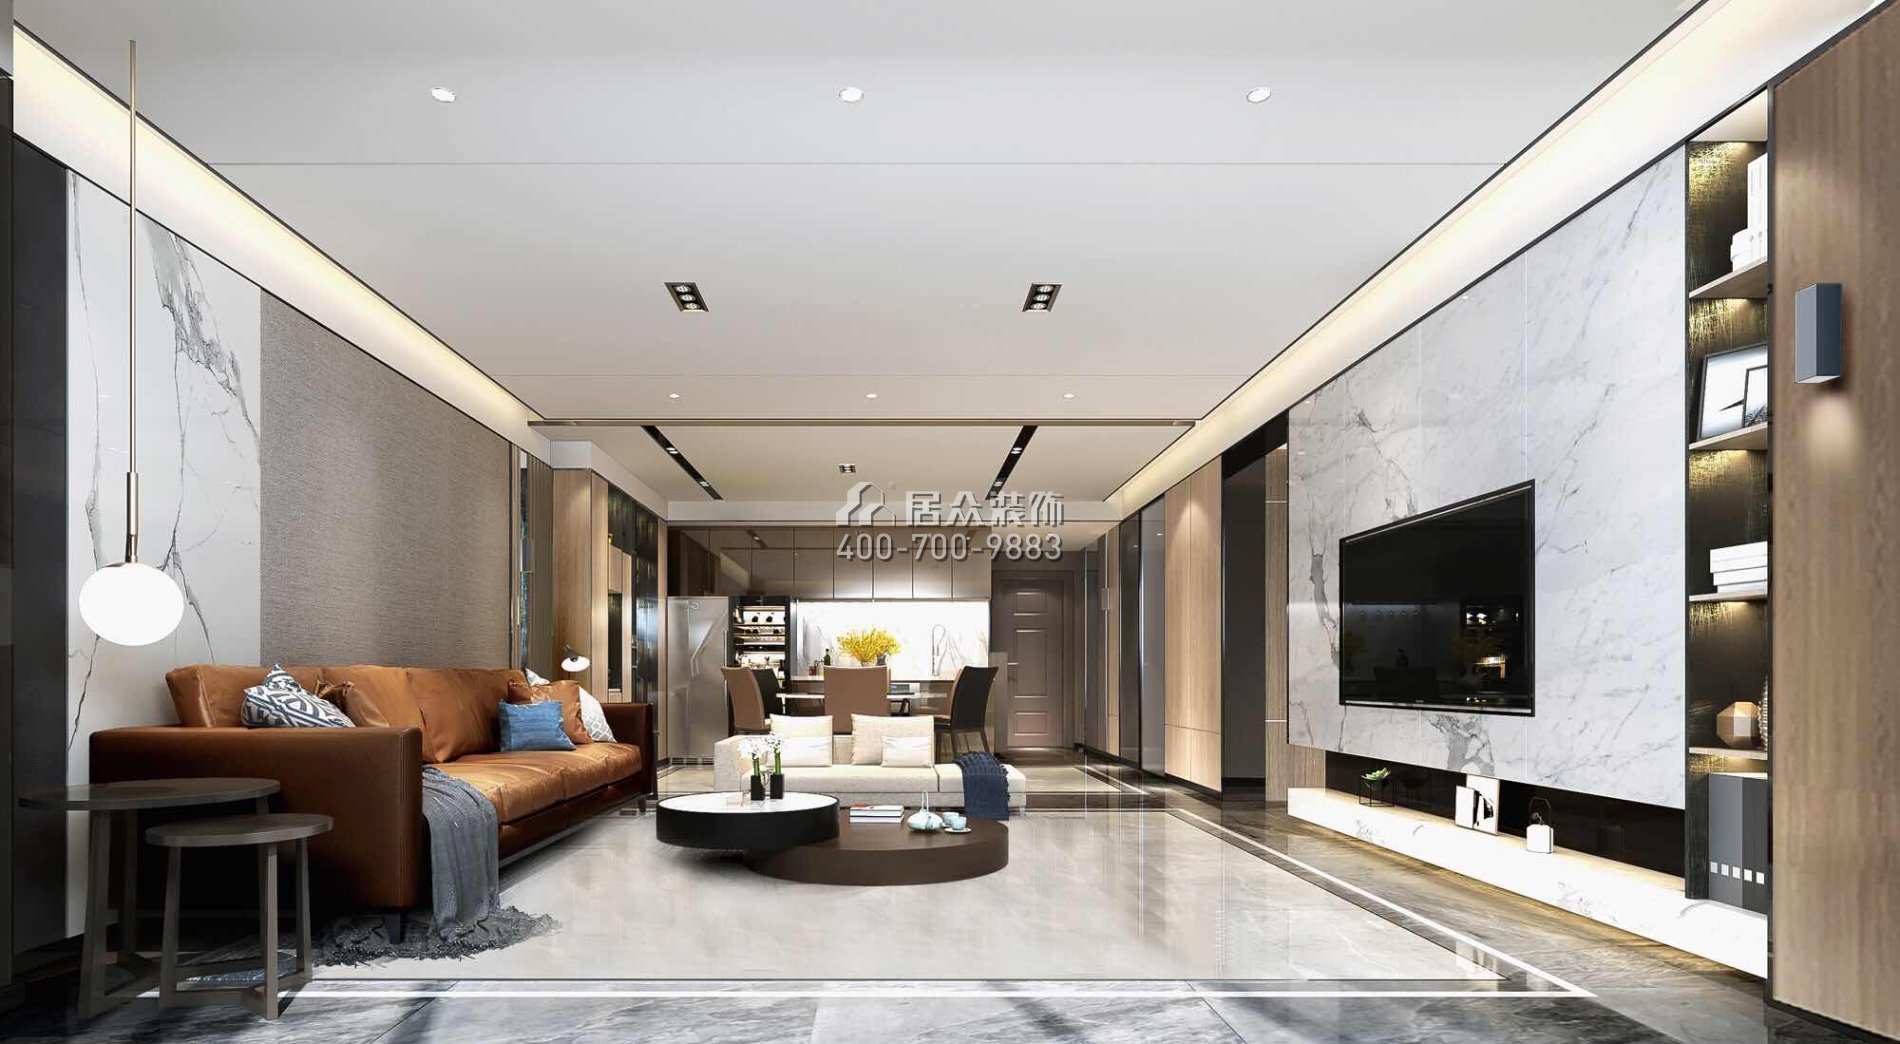 黄埔雅苑三期126平方米现代简约风格平层户型客厅装修效果图